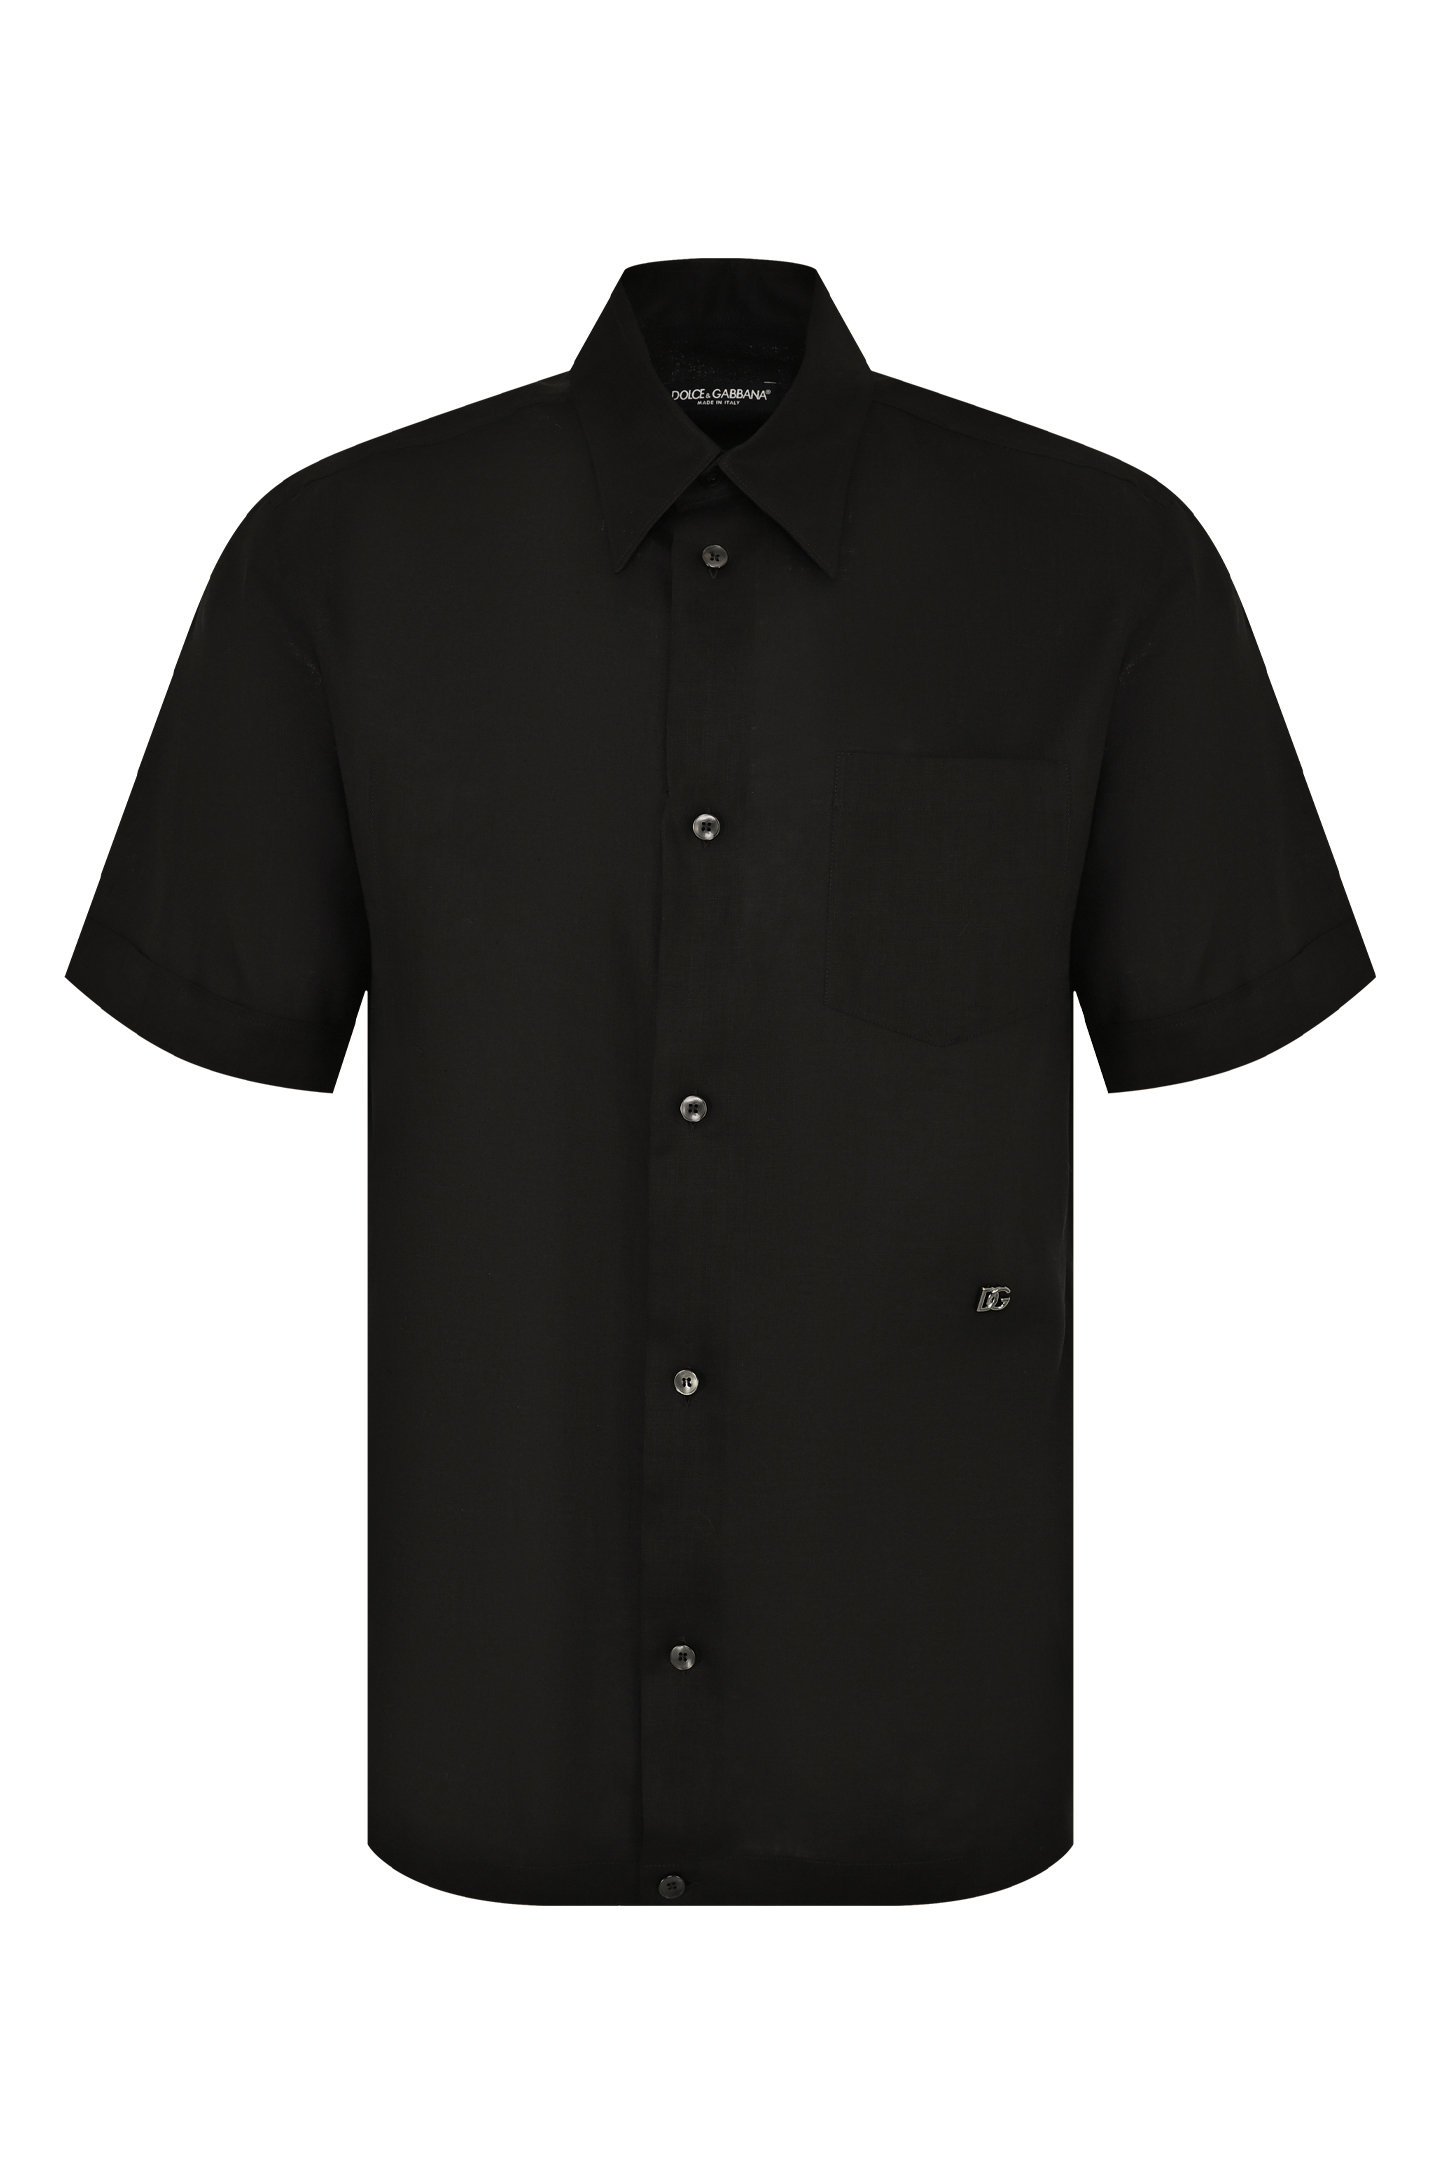 Рубашка DOLCE & GABBANA G5KE1T FU4IK, цвет: Черный, Мужской